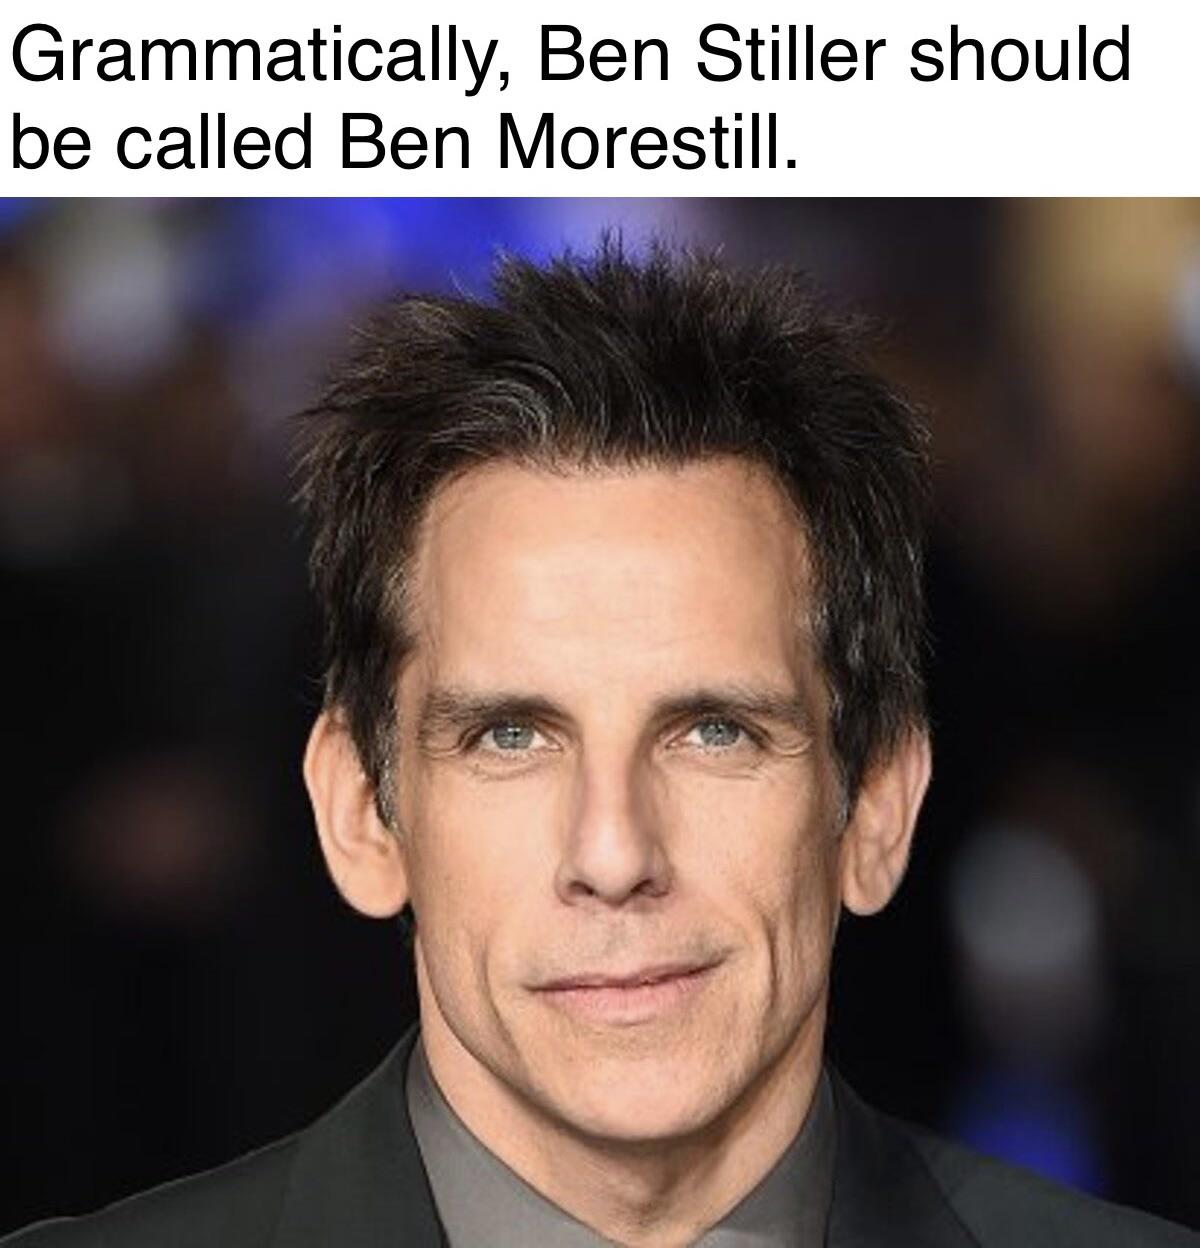 steve carell ben stiller - Grammatically, Ben Stiller should be called Ben Morestill.